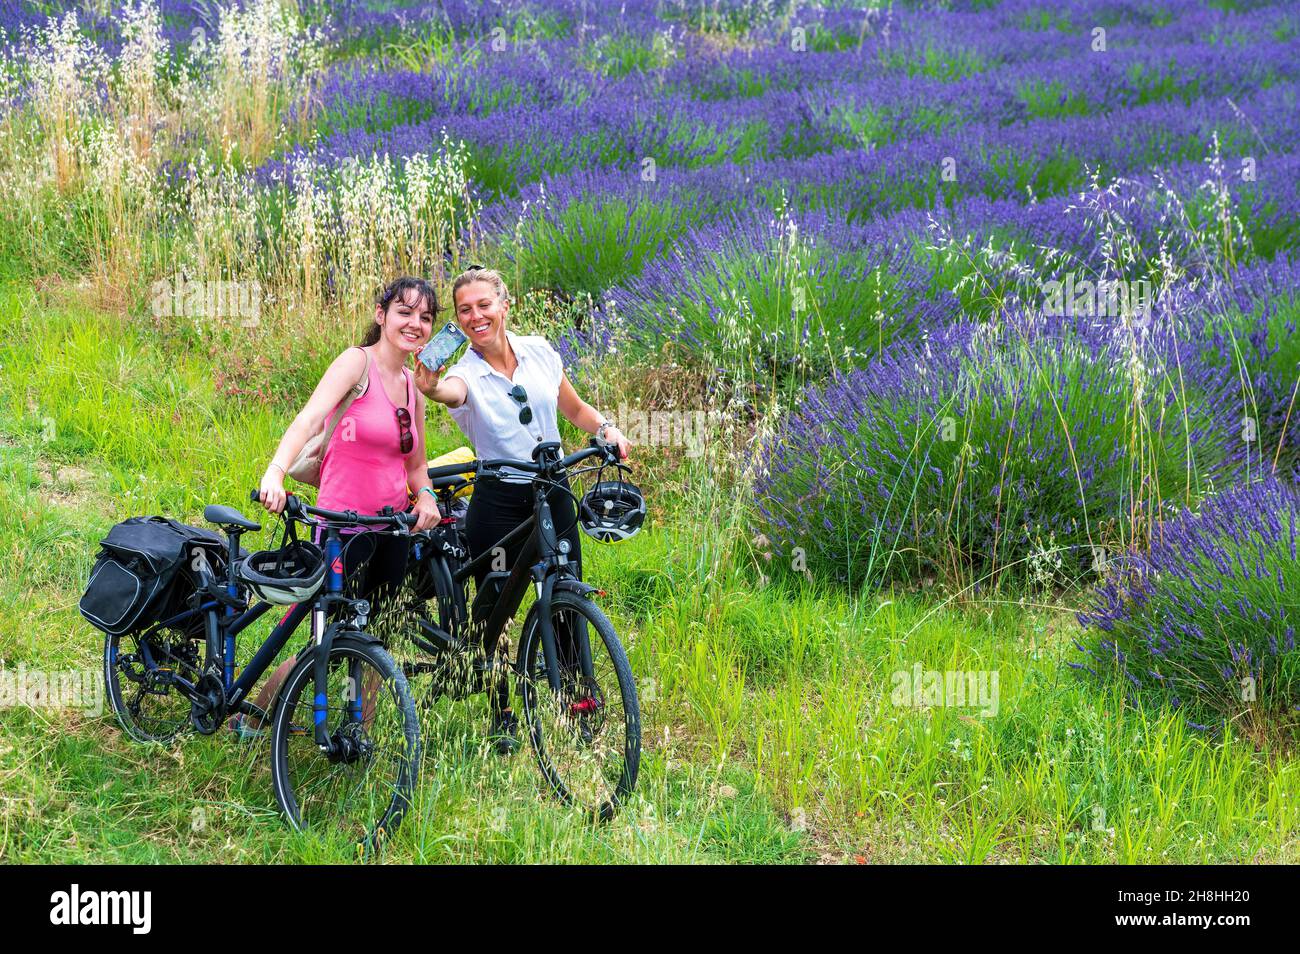 France, Ardèche, ViaRôna, Bourg-Saint-Andéol, cyclistes prenant un selfie devant un champ de lavande près de la ViaRôna Banque D'Images